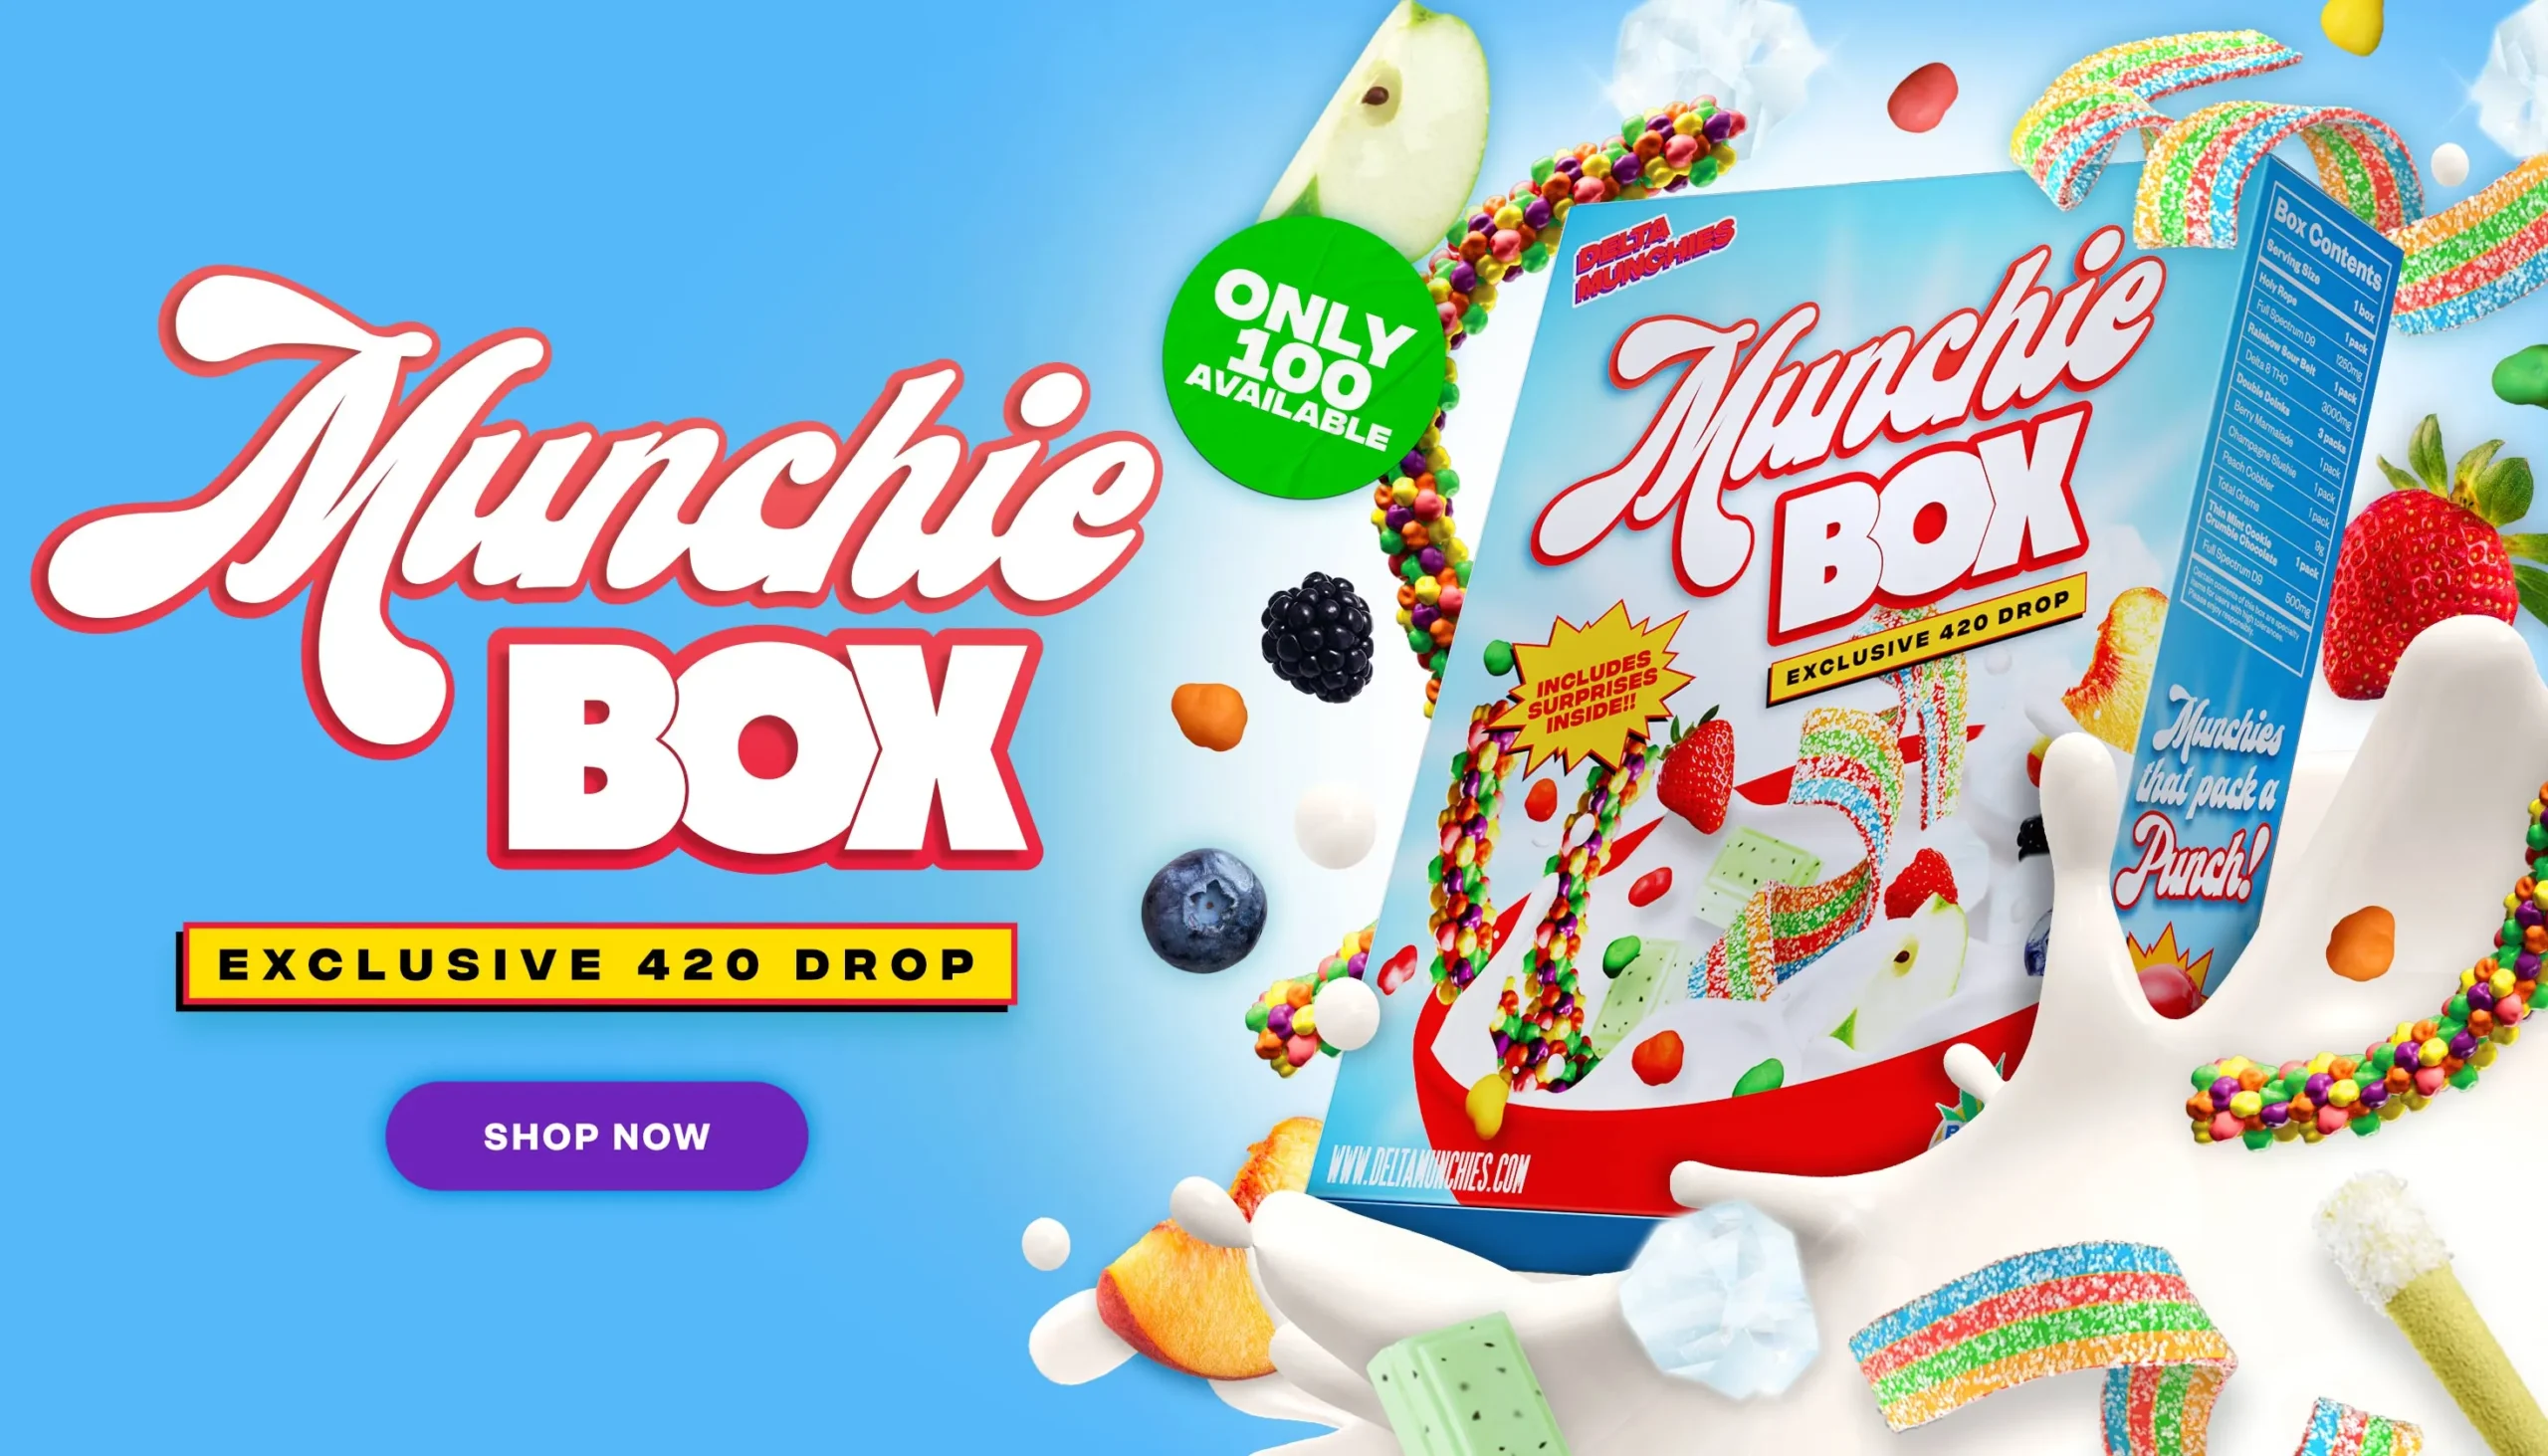 Delta Munchies 420 exclusive munchie box. shop now